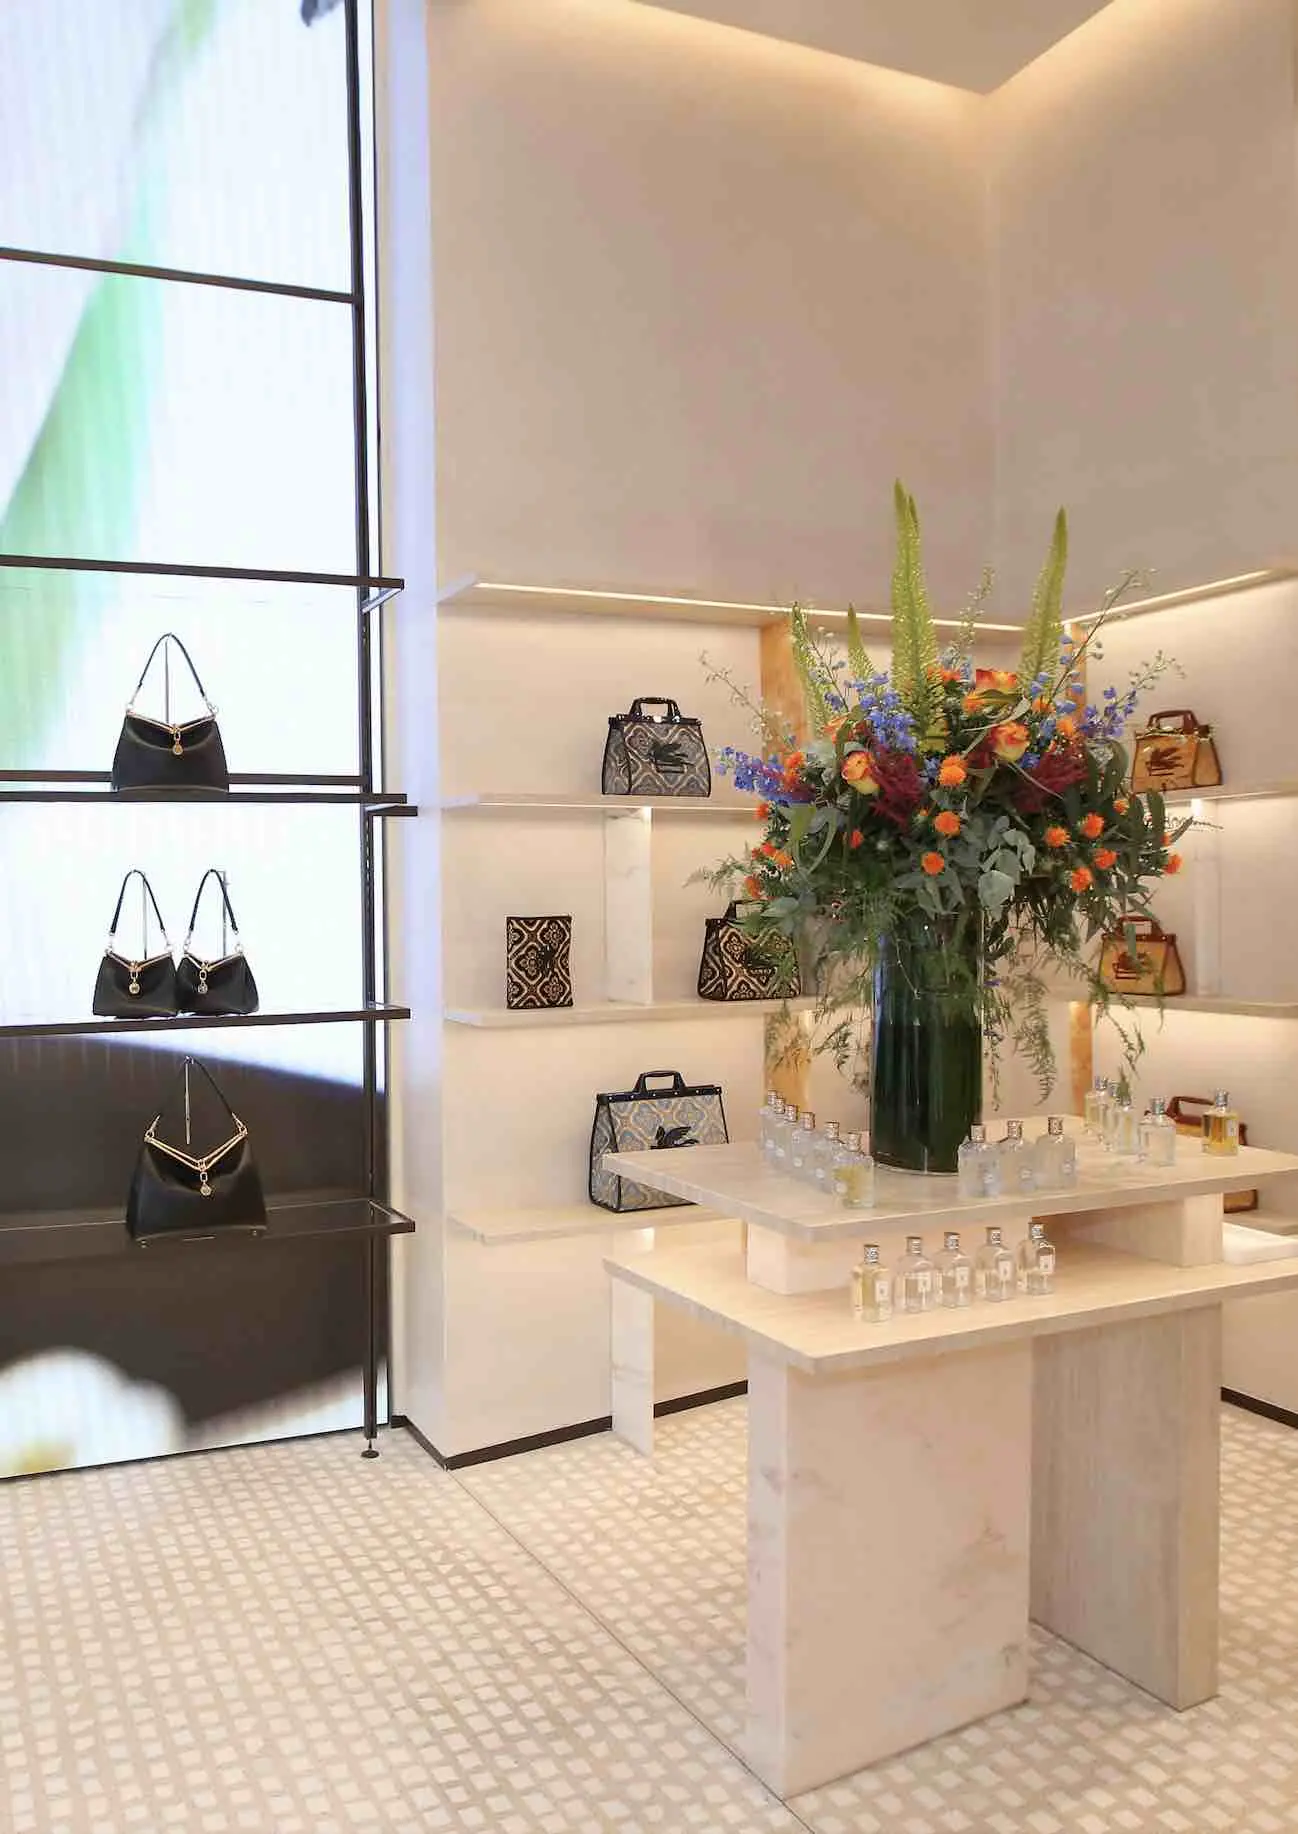 La firma de moda Etro abrirá su nueva tienda en Paseo de Gracia